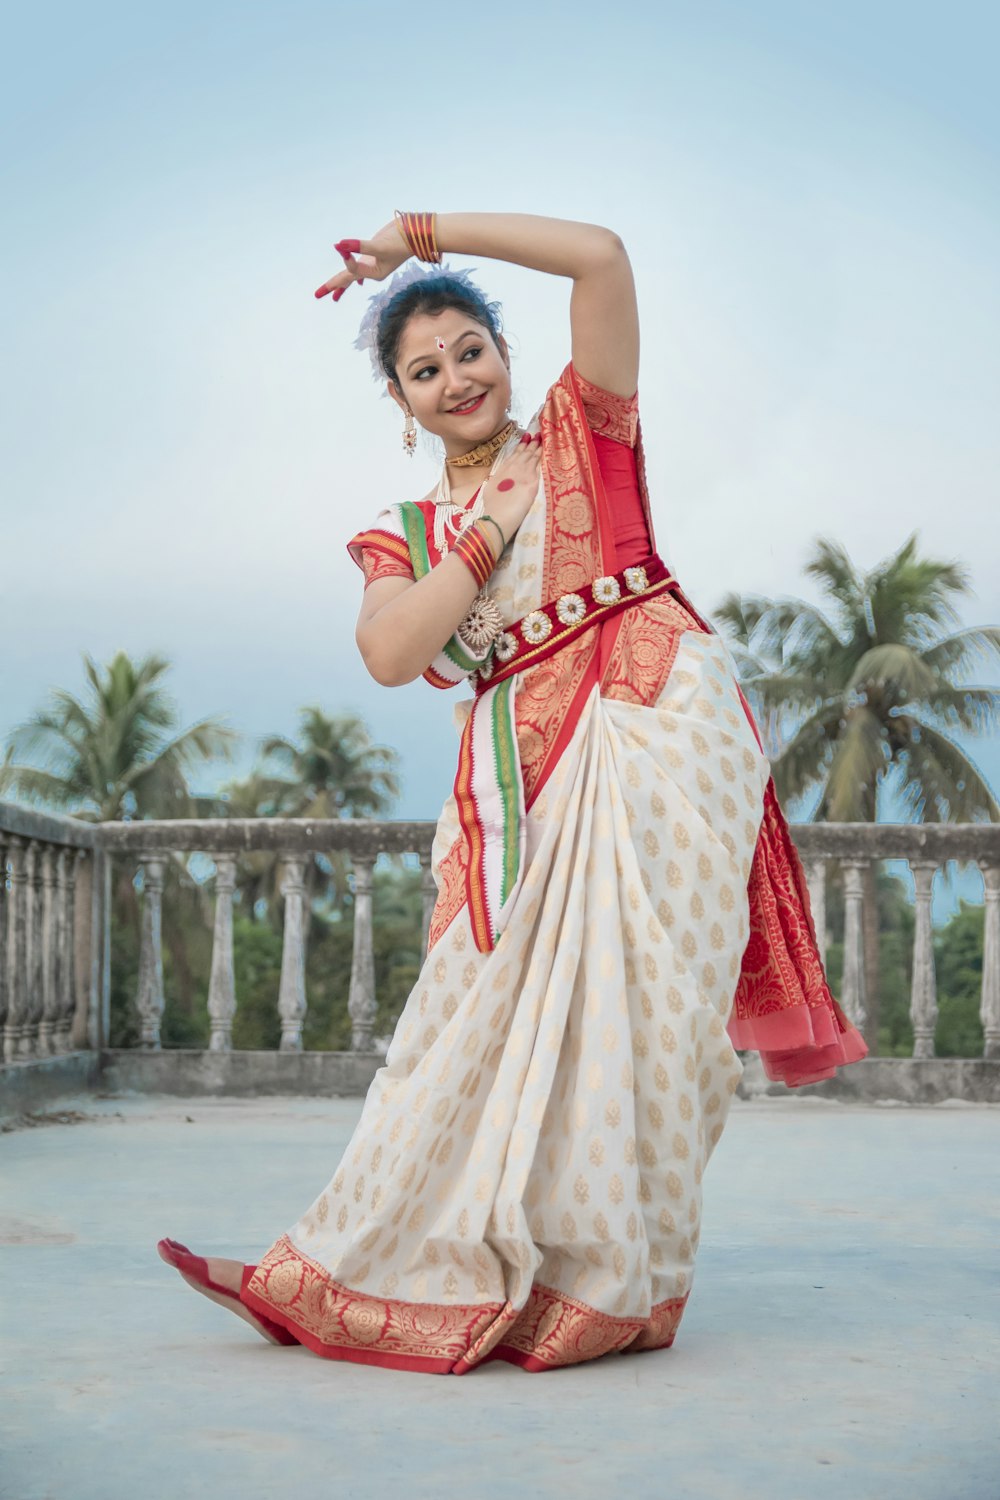 Mujer en sari rojo y blanco de pie sobre el piso de concreto gris durante el día